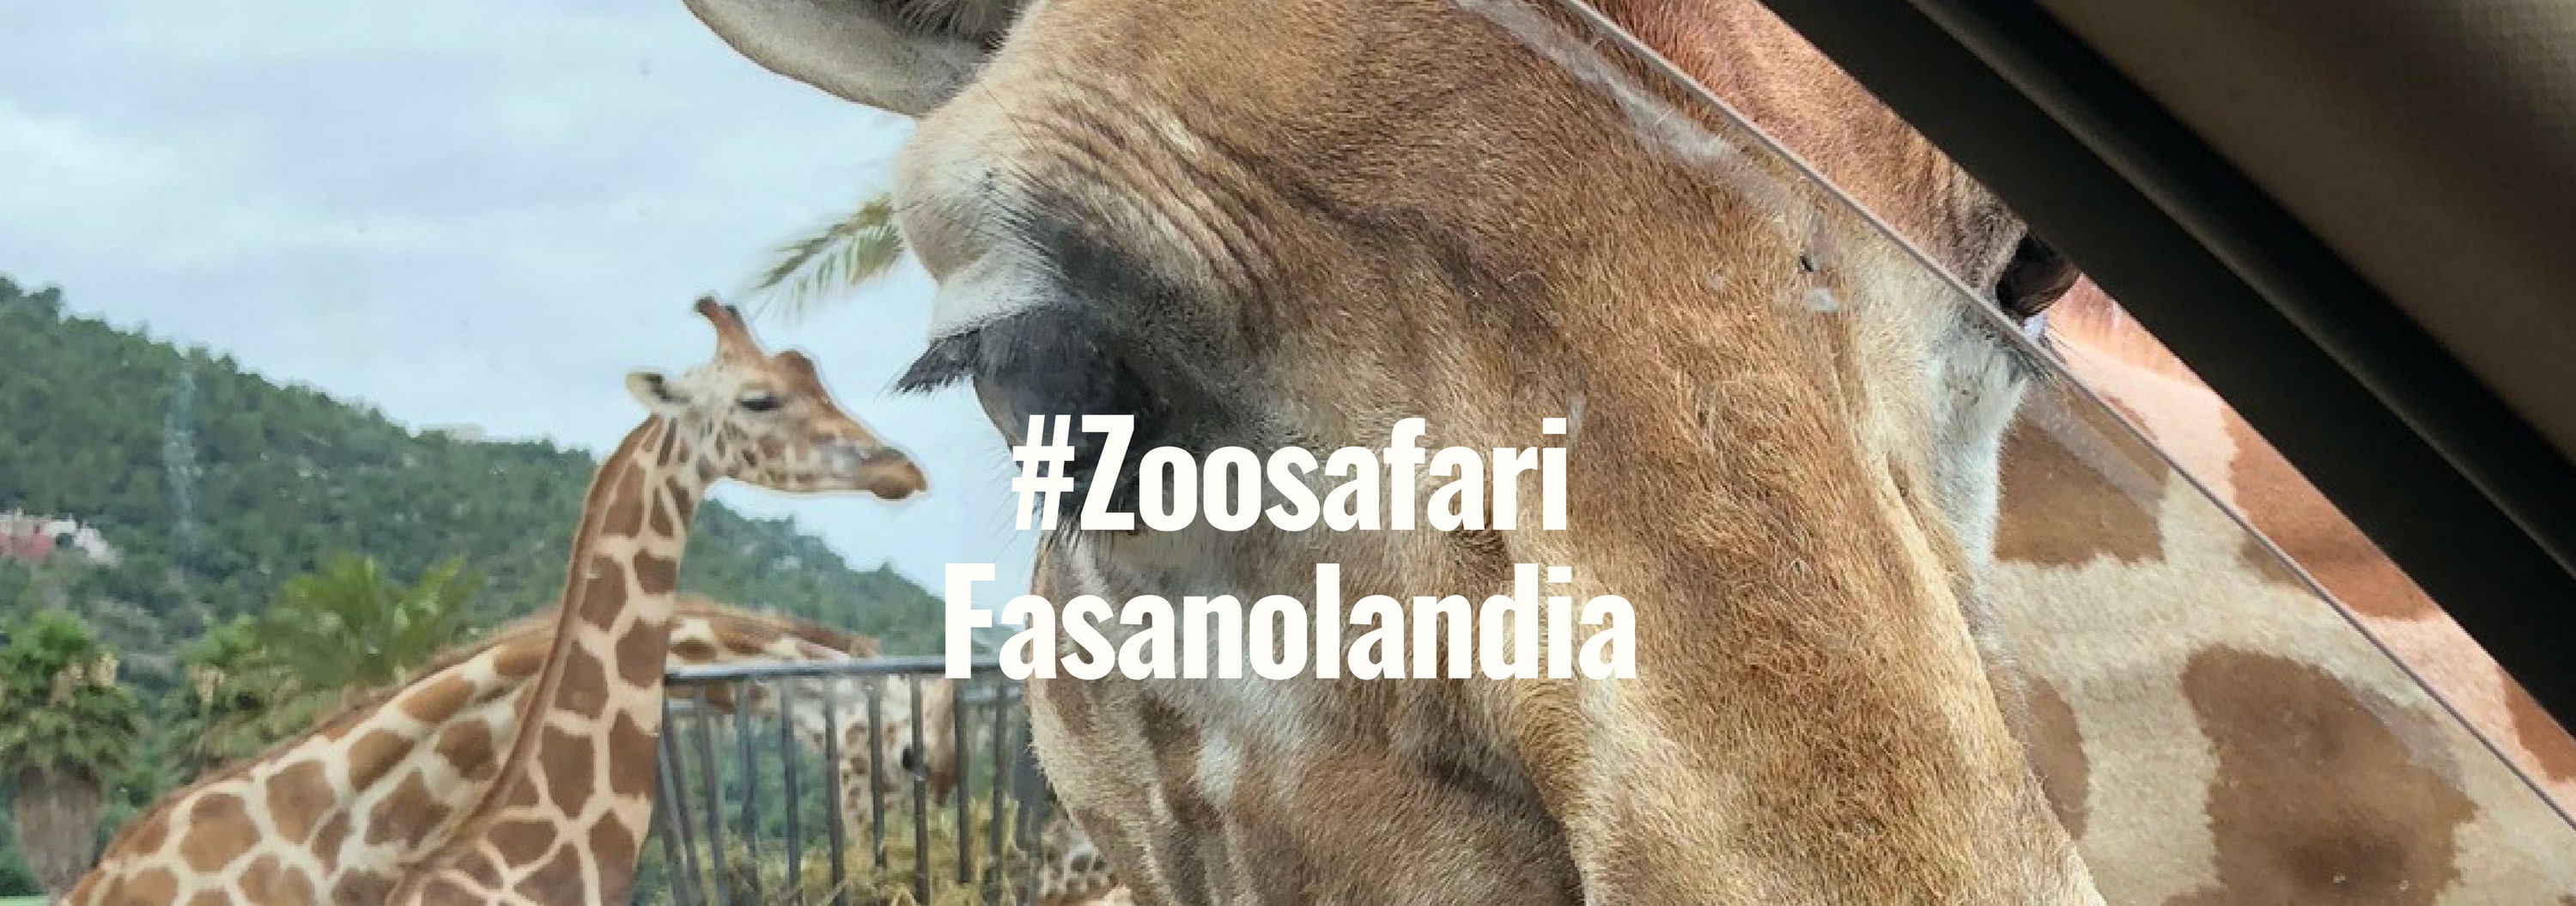 #ZoosafariFasanolandia